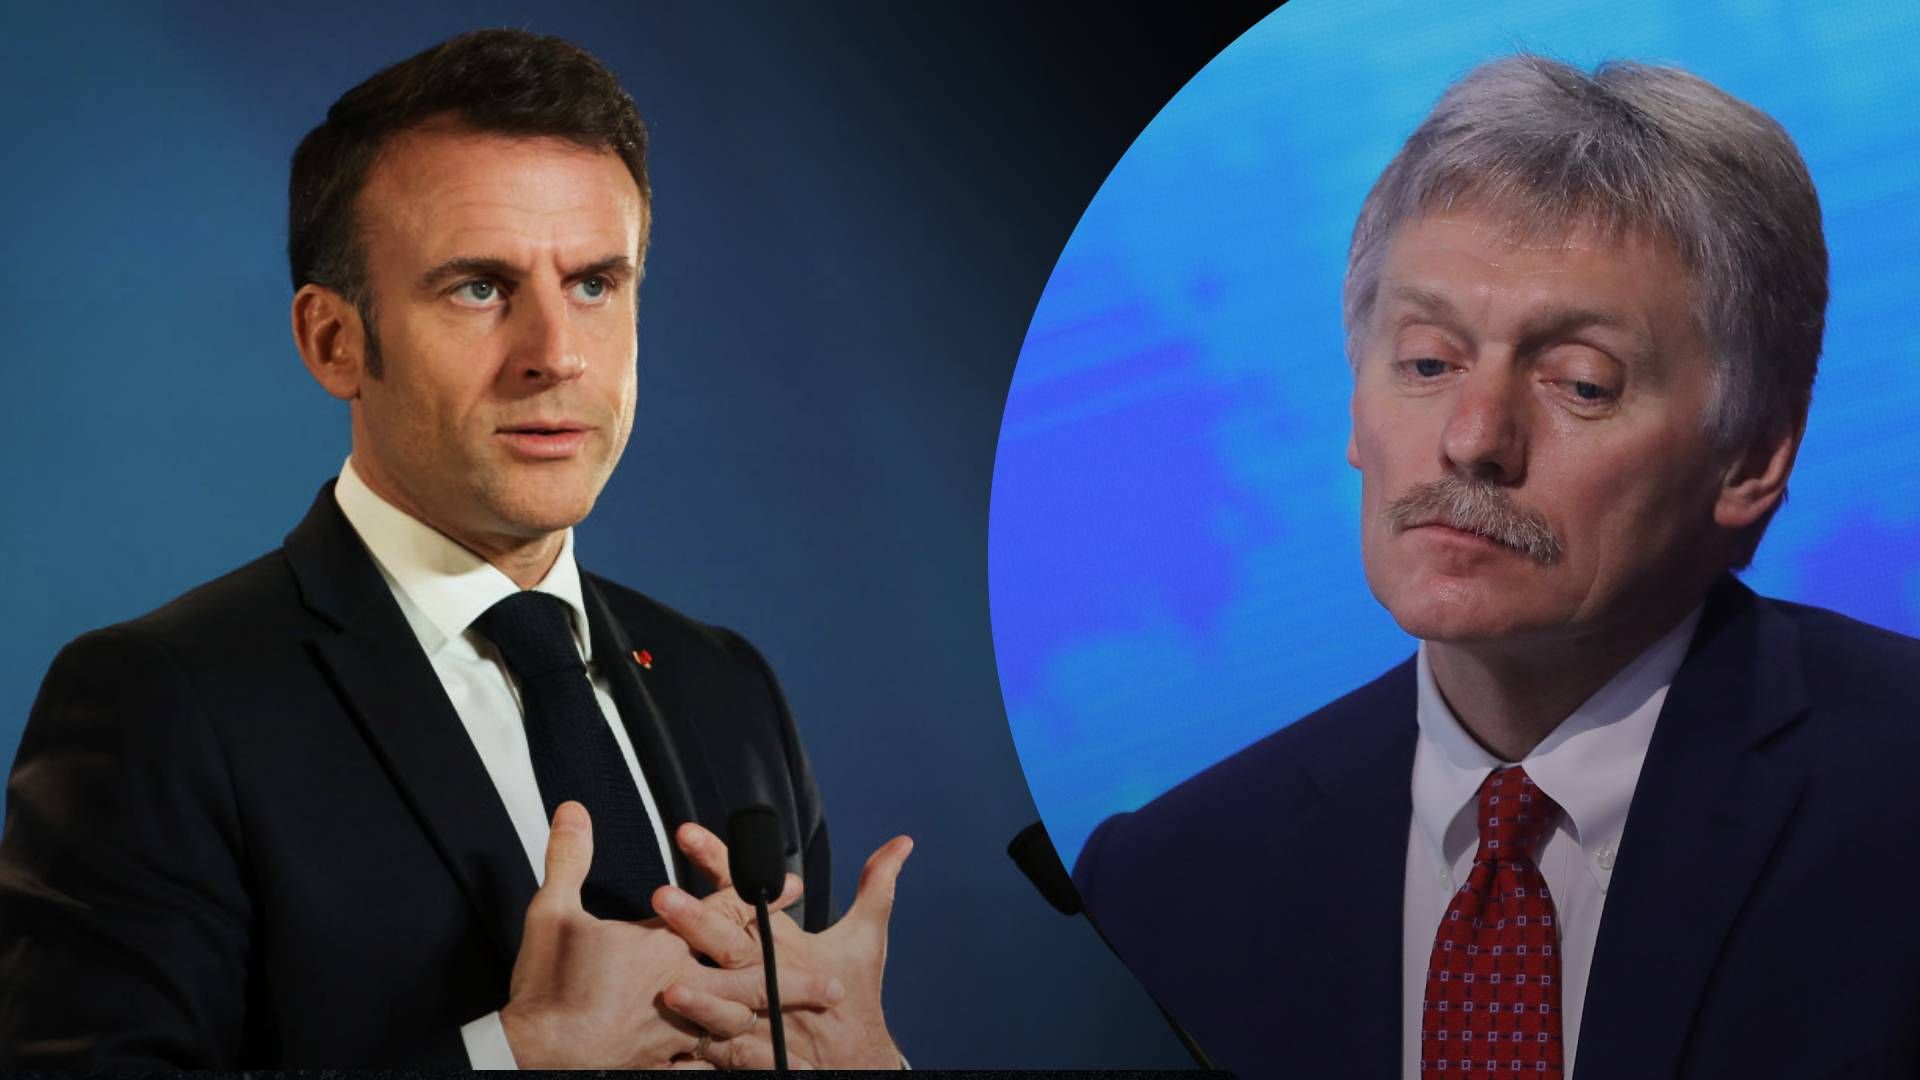 Націлено конкретно на Францію: ISW про слова Пєскова про пряму конфронтацію з НАТО - 24 Канал